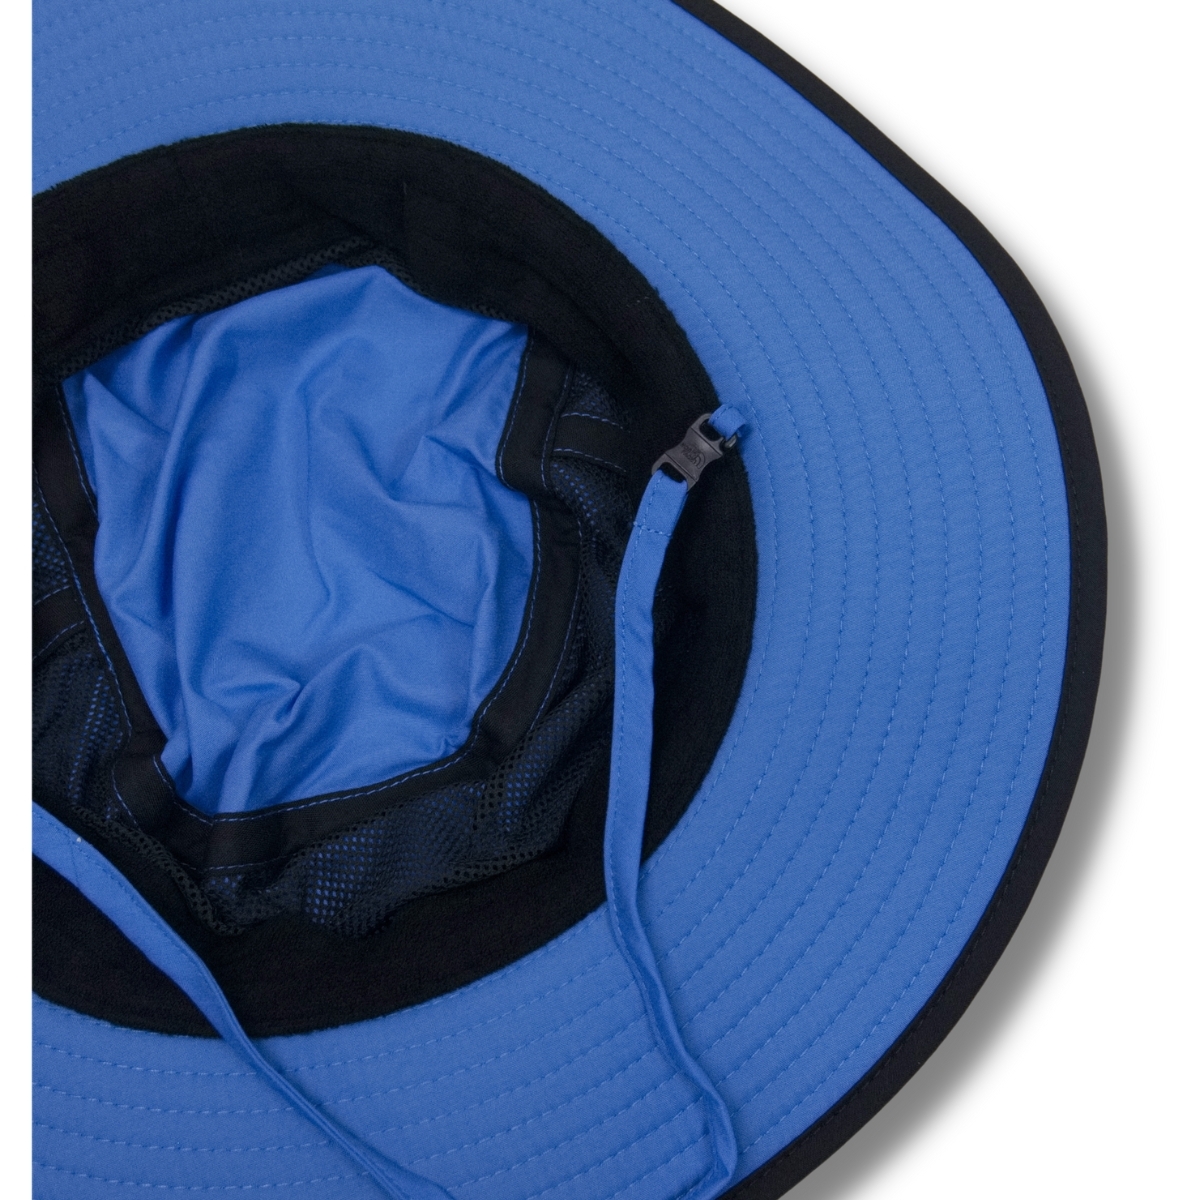 即決☆ノースフェイス ホライズンハット SK/Mサイズ スーパーソニックブルー×ブラック 黒 送料無料 登山 トレッキング 帽子 ハット UV 